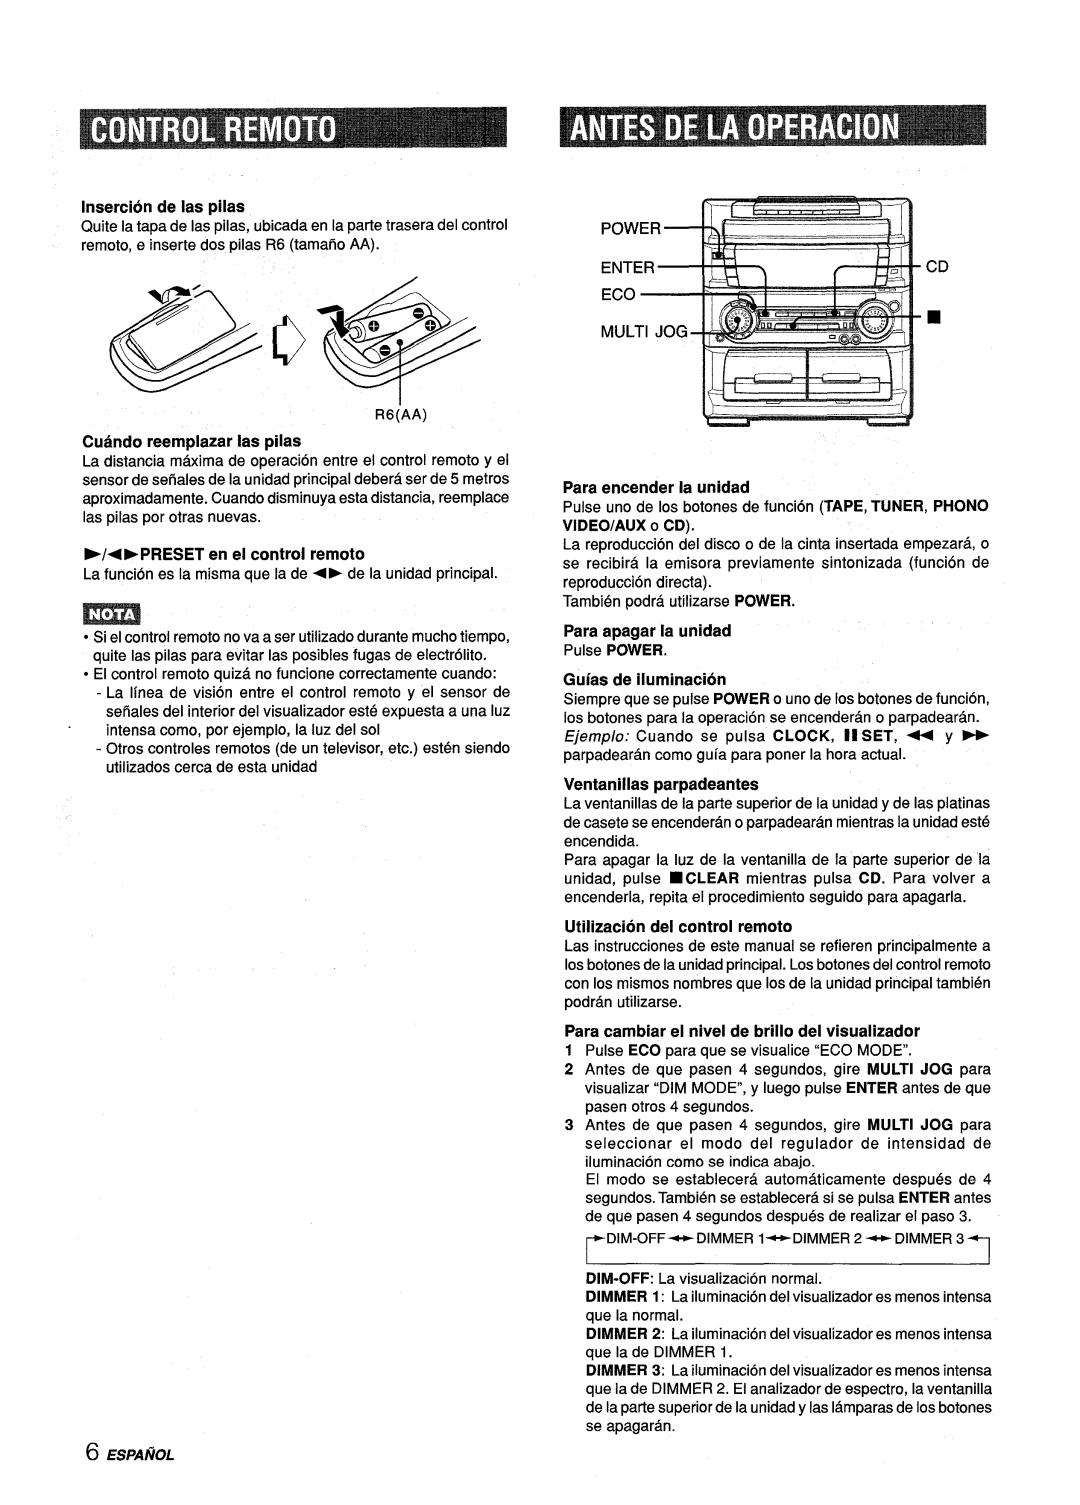 Aiwa Z-L70 manual Insercidn de Ias pilas, + EPRESET en el control remoto, Para encender la unidad, Para apagar la unidad 